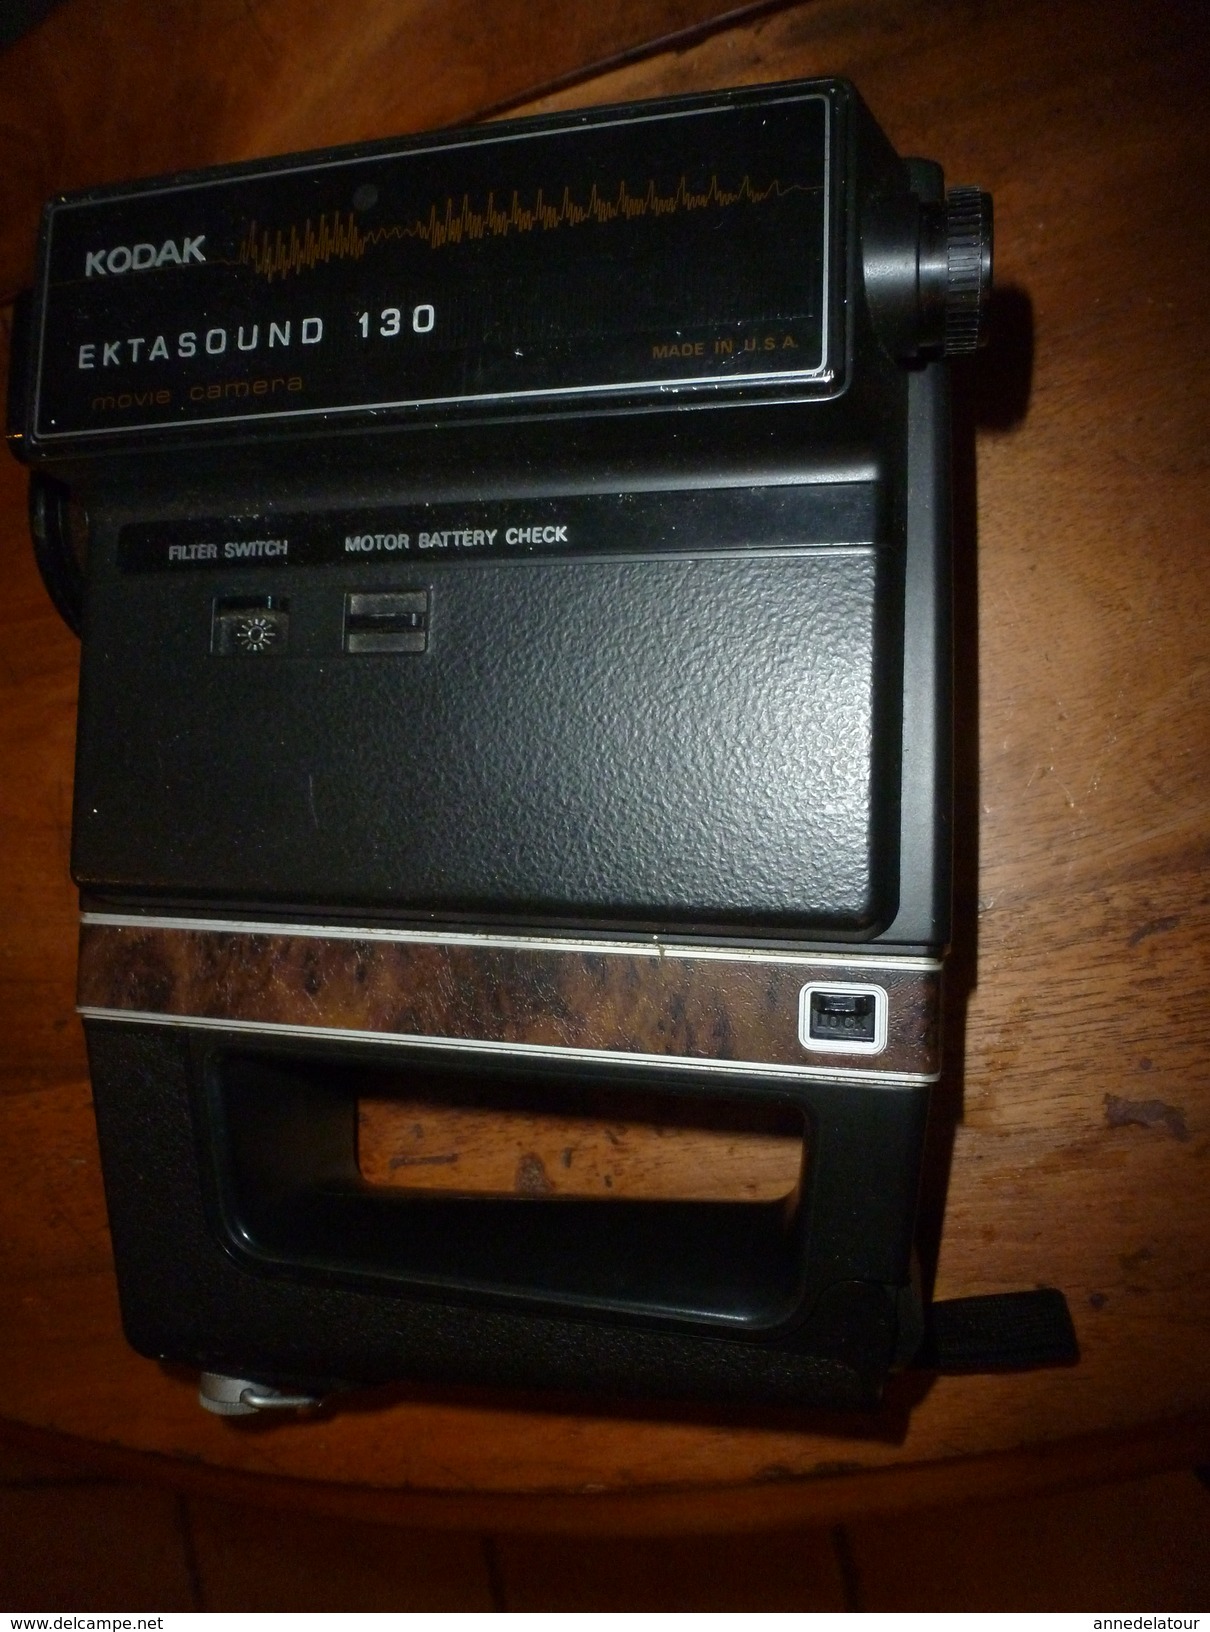 KODAK EKTASOUND 130 Movie Caméra :  Avec Notice Et Boite D'origine  (année De Fabrication Probable, Vers 1973) - Caméscope